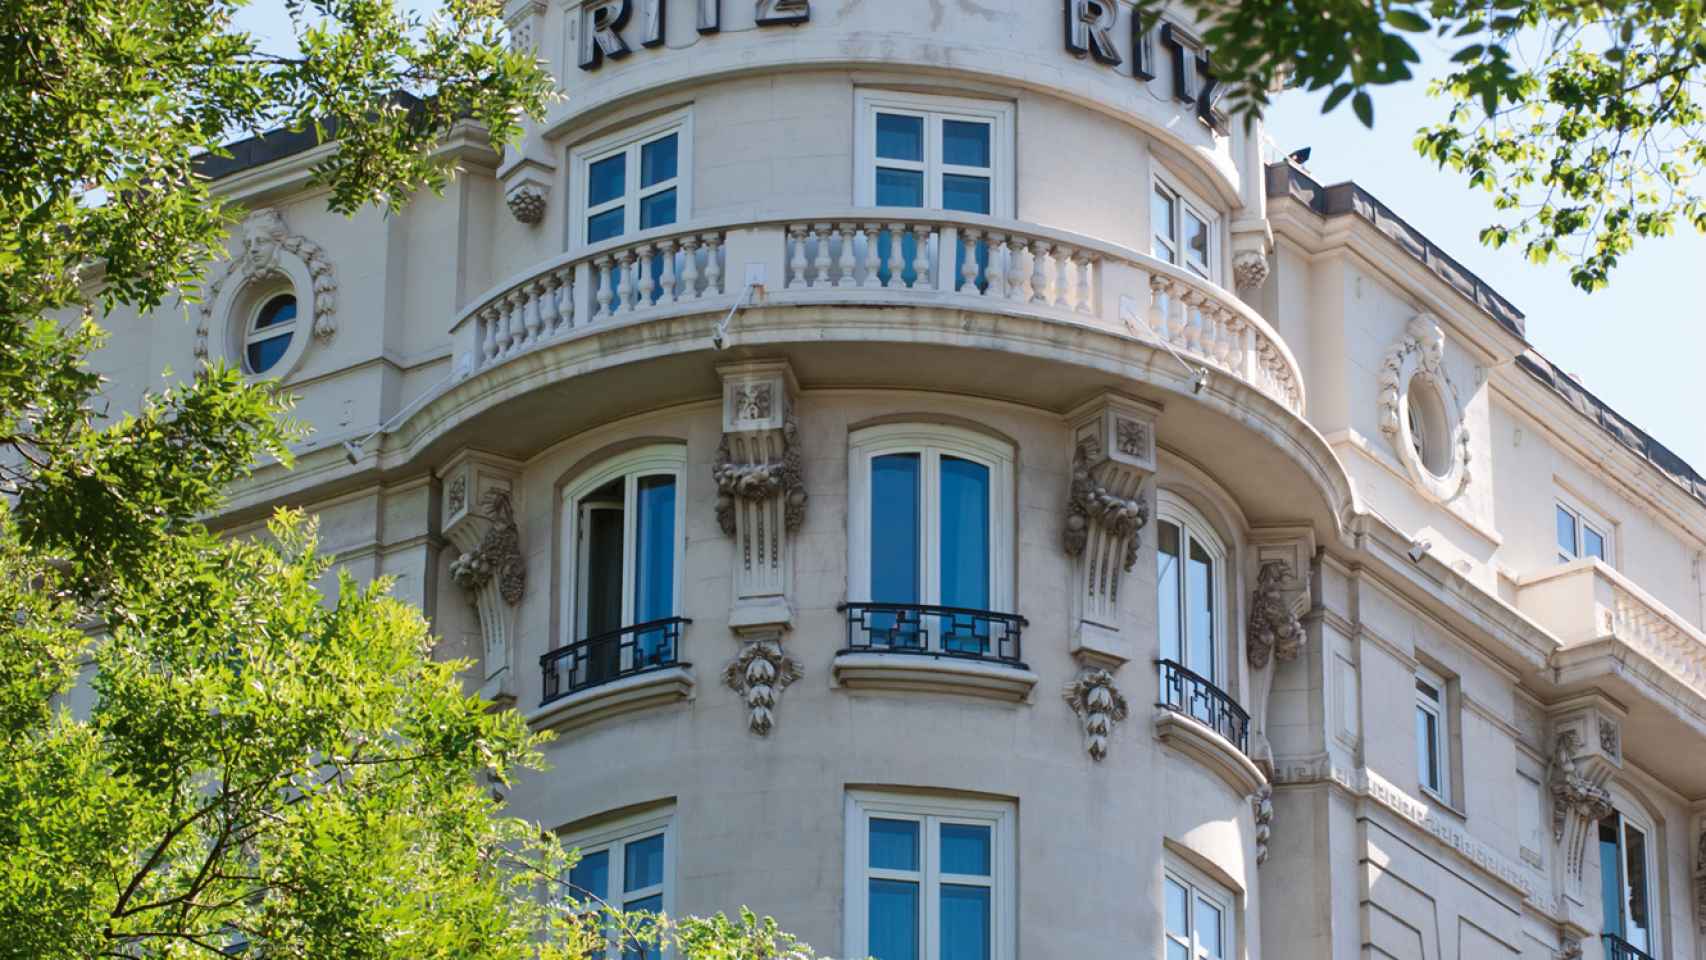 Fachada del hotel Ritz en Madrid.